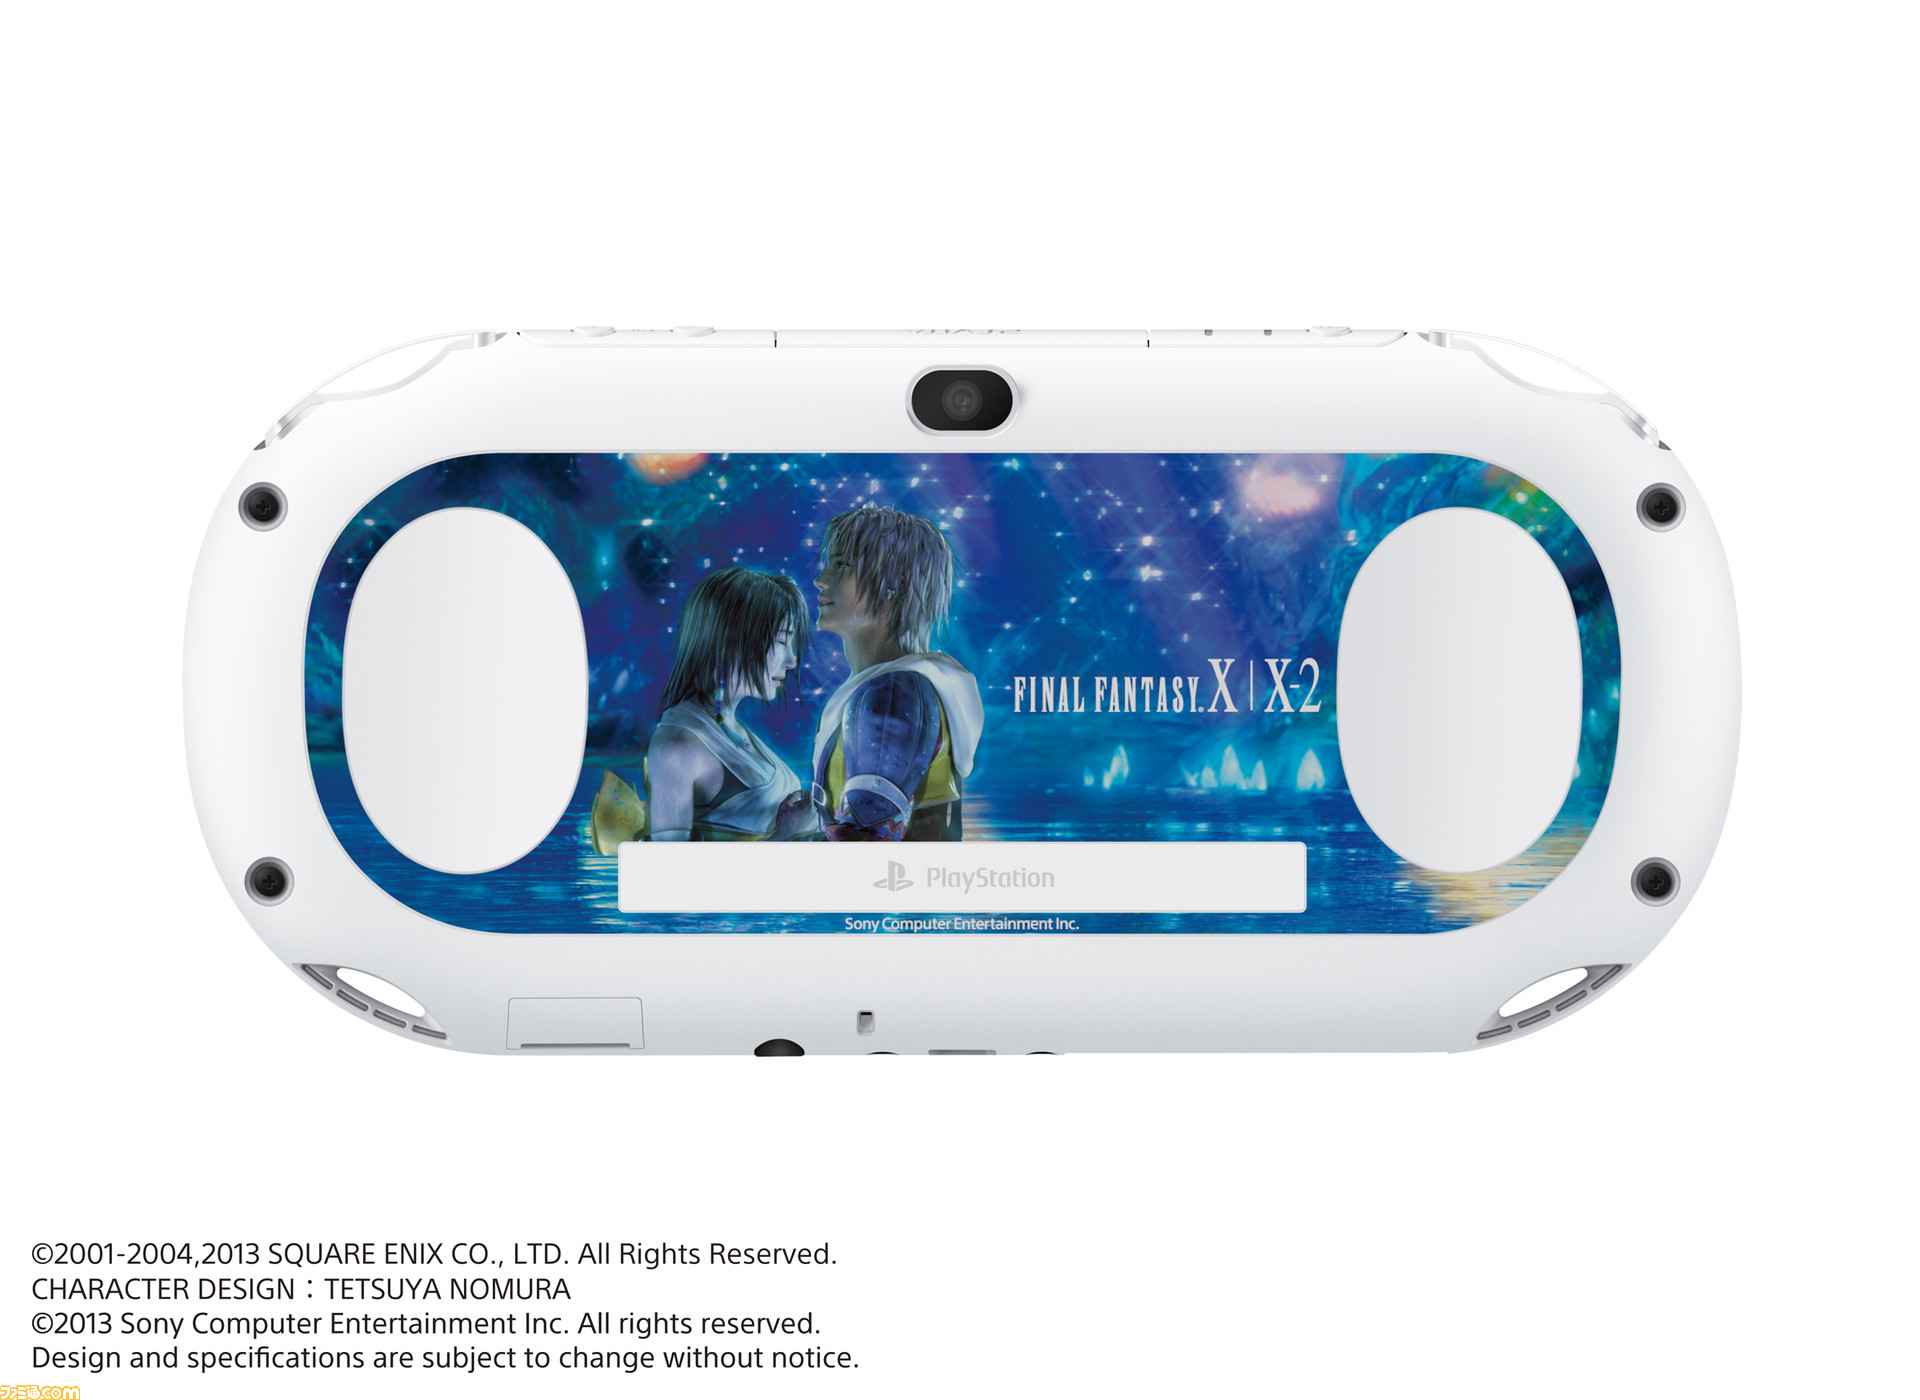 新型ps Vitaと Ffx Hd リマスター Ffx 2 Hd リマスター をセットにした Playstation Vita Final Fantasy X X 2 Hd Remaster Resolution Box が数量限定で12月26日に発売決定 ファミ通 Com